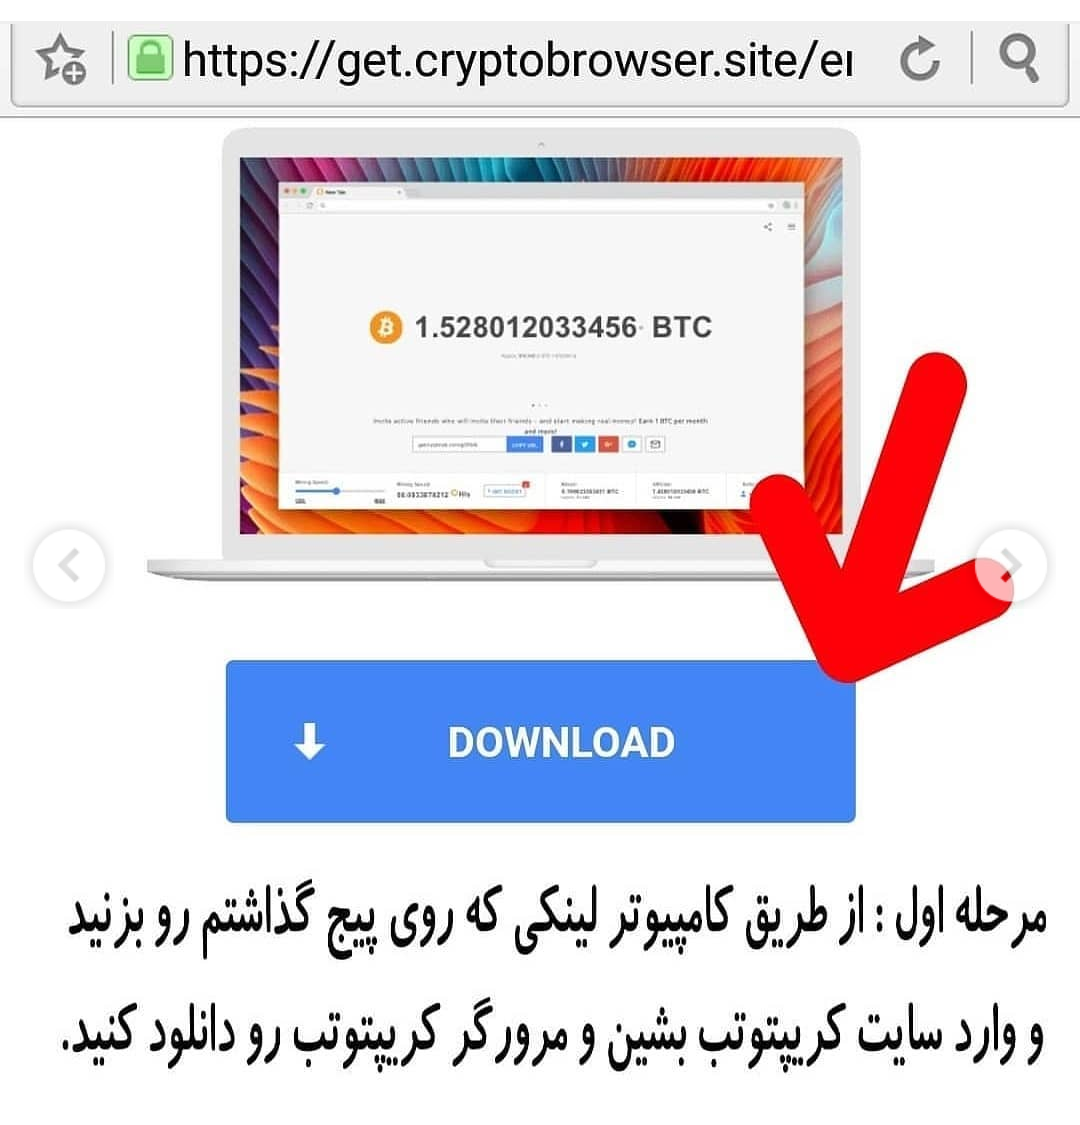 مرورگر کریپتوتب CryptoTab browser